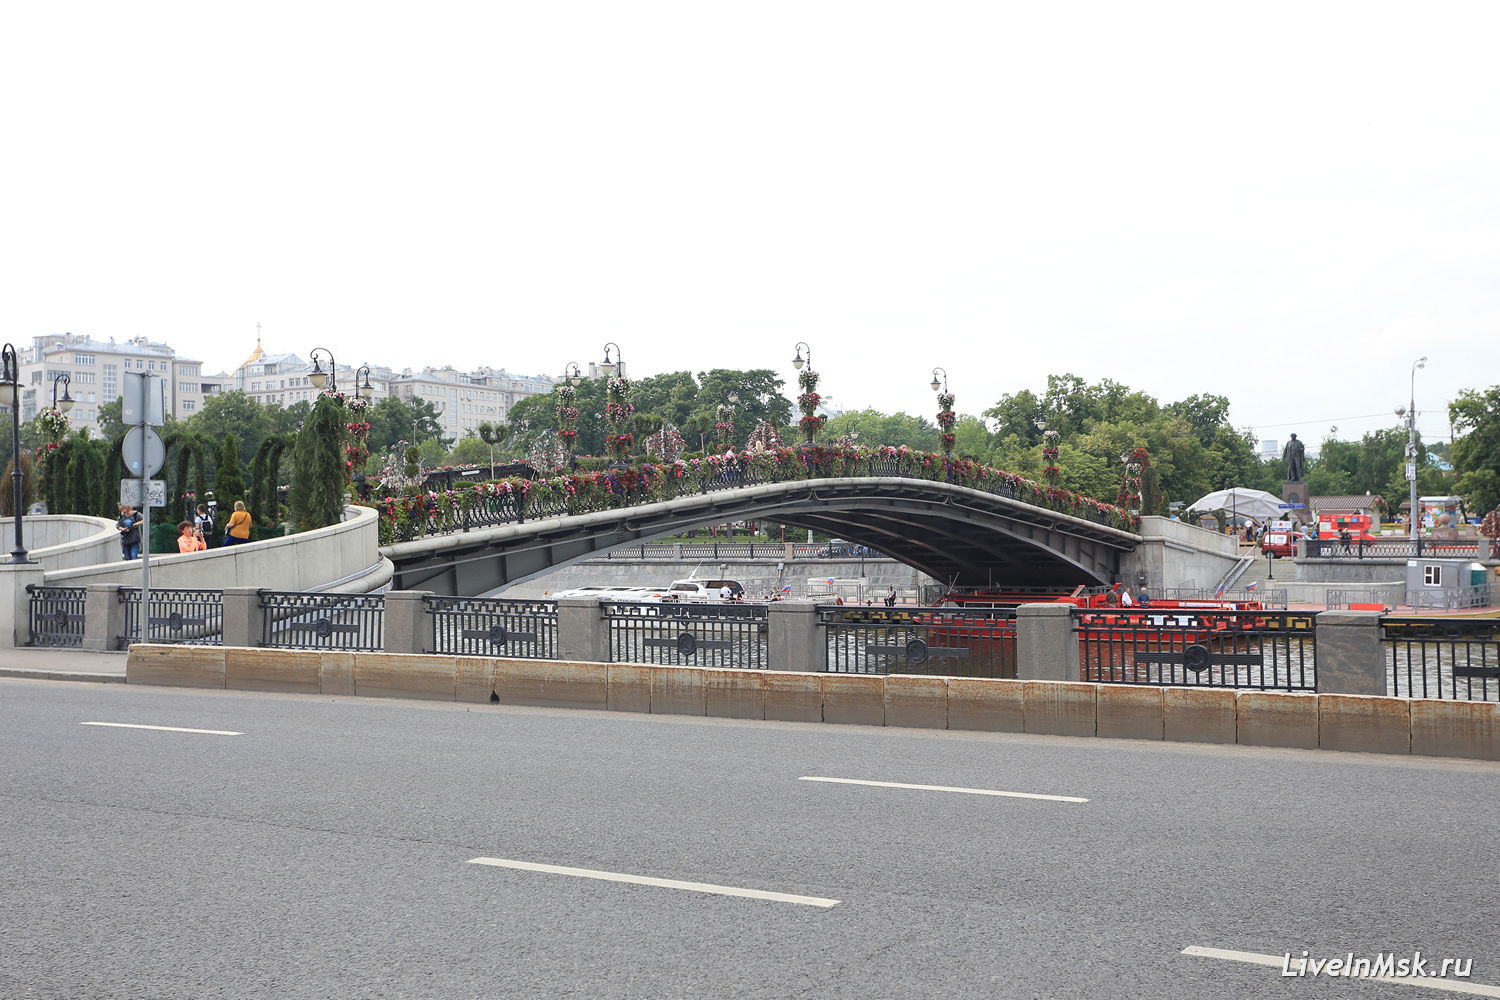 Лужков мост, фото 2016 года